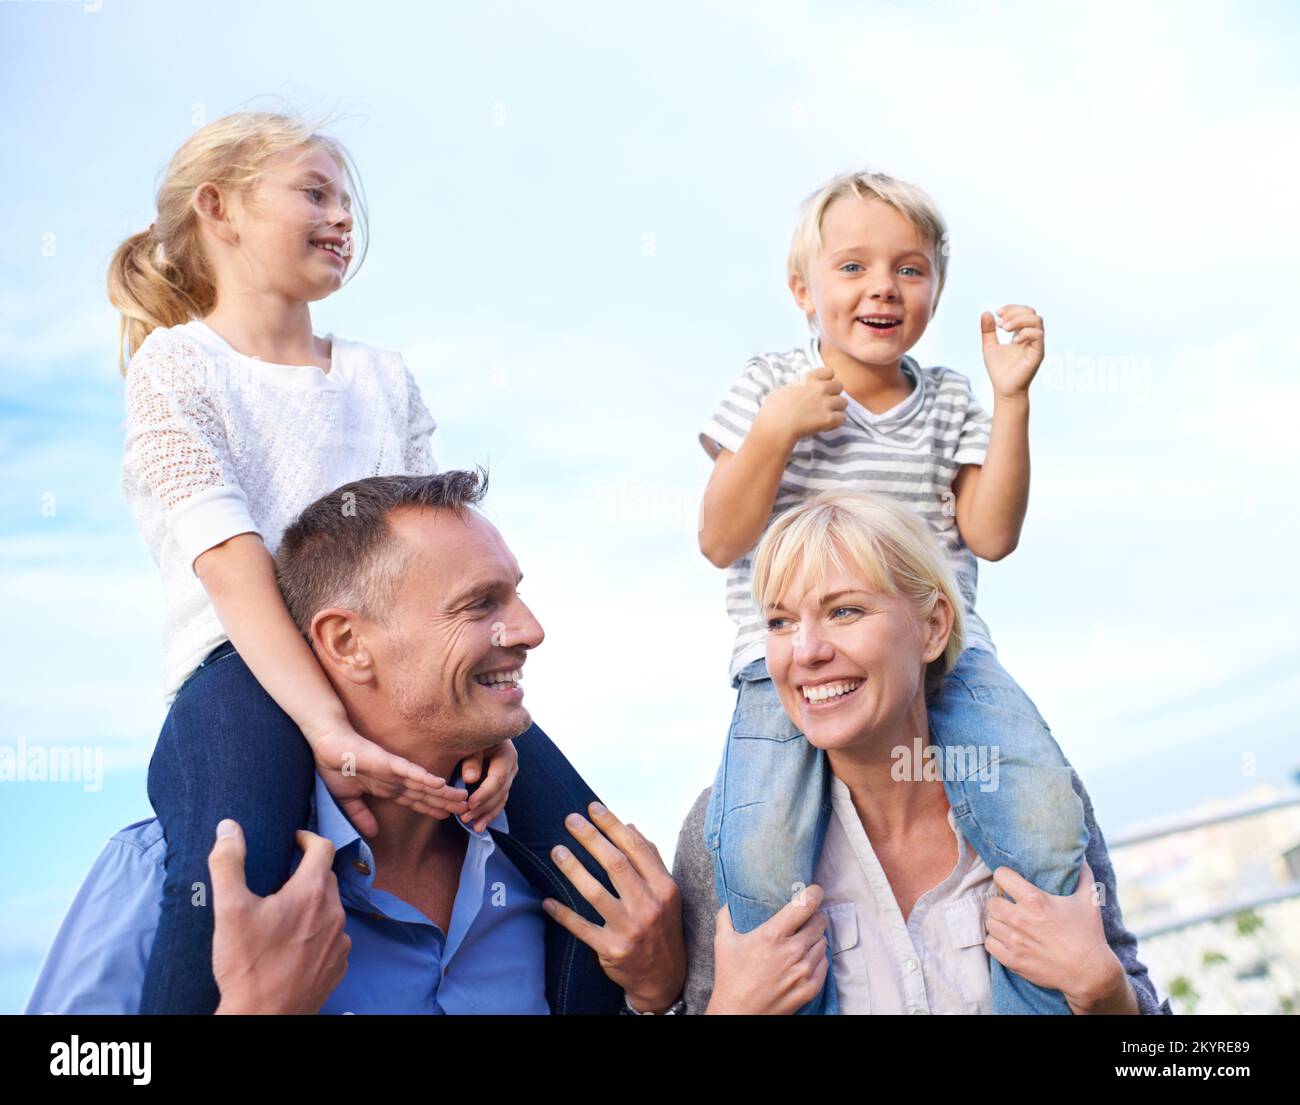 Ich verbringe schöne Zeit mit Mami und Daddy. Bildausschnitt von zwei Eltern, die ihre Kinder auf den Schultern im Freien tragen. Stockfoto